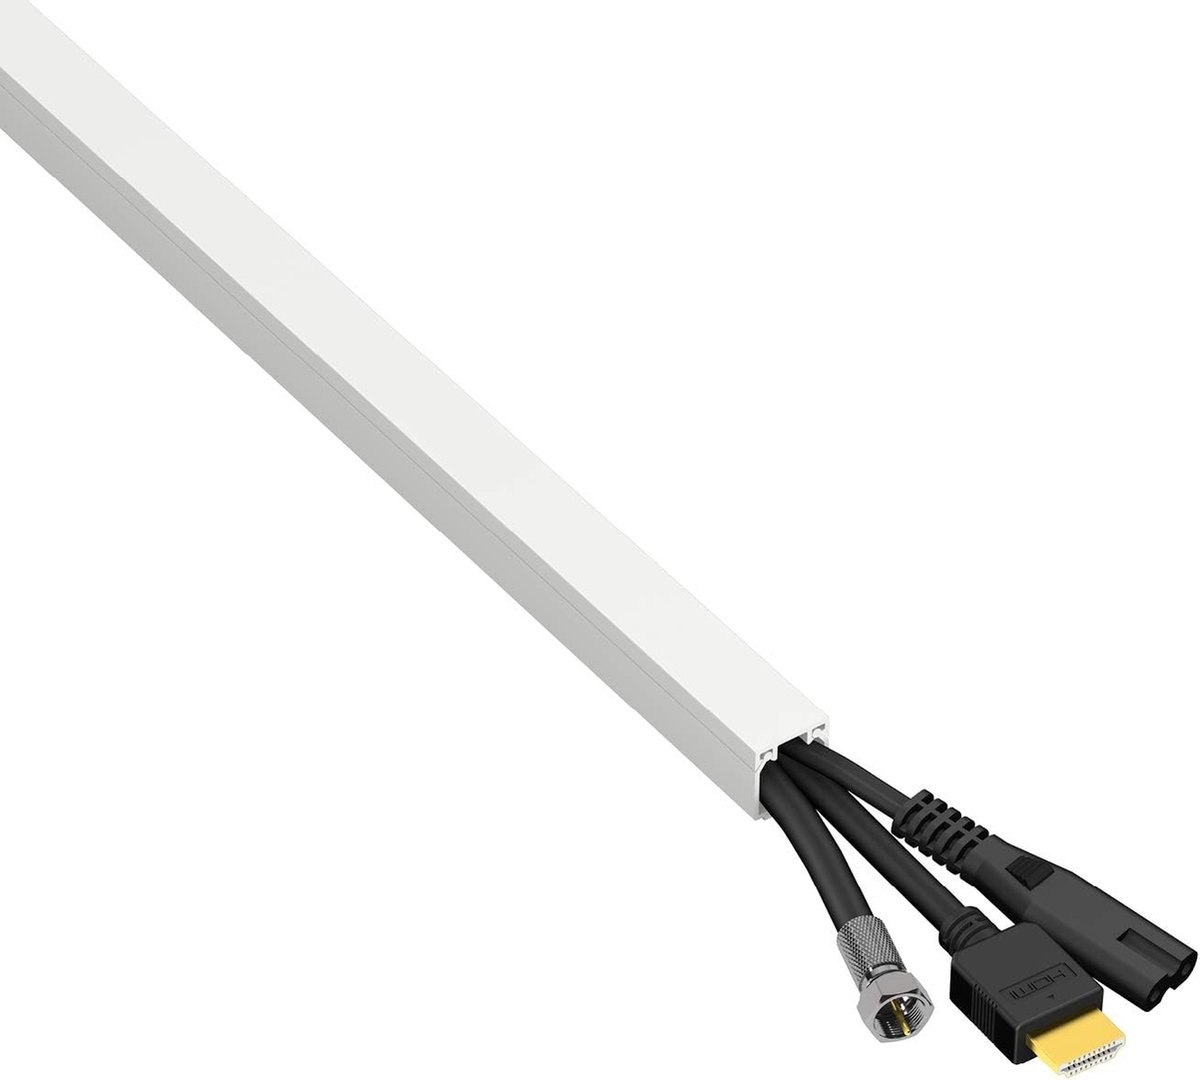 Hama Goulotte de câbles en PVC, autocollante, demi-ronde, 100 / 1,1 / 1,0  cm, blanc, 4